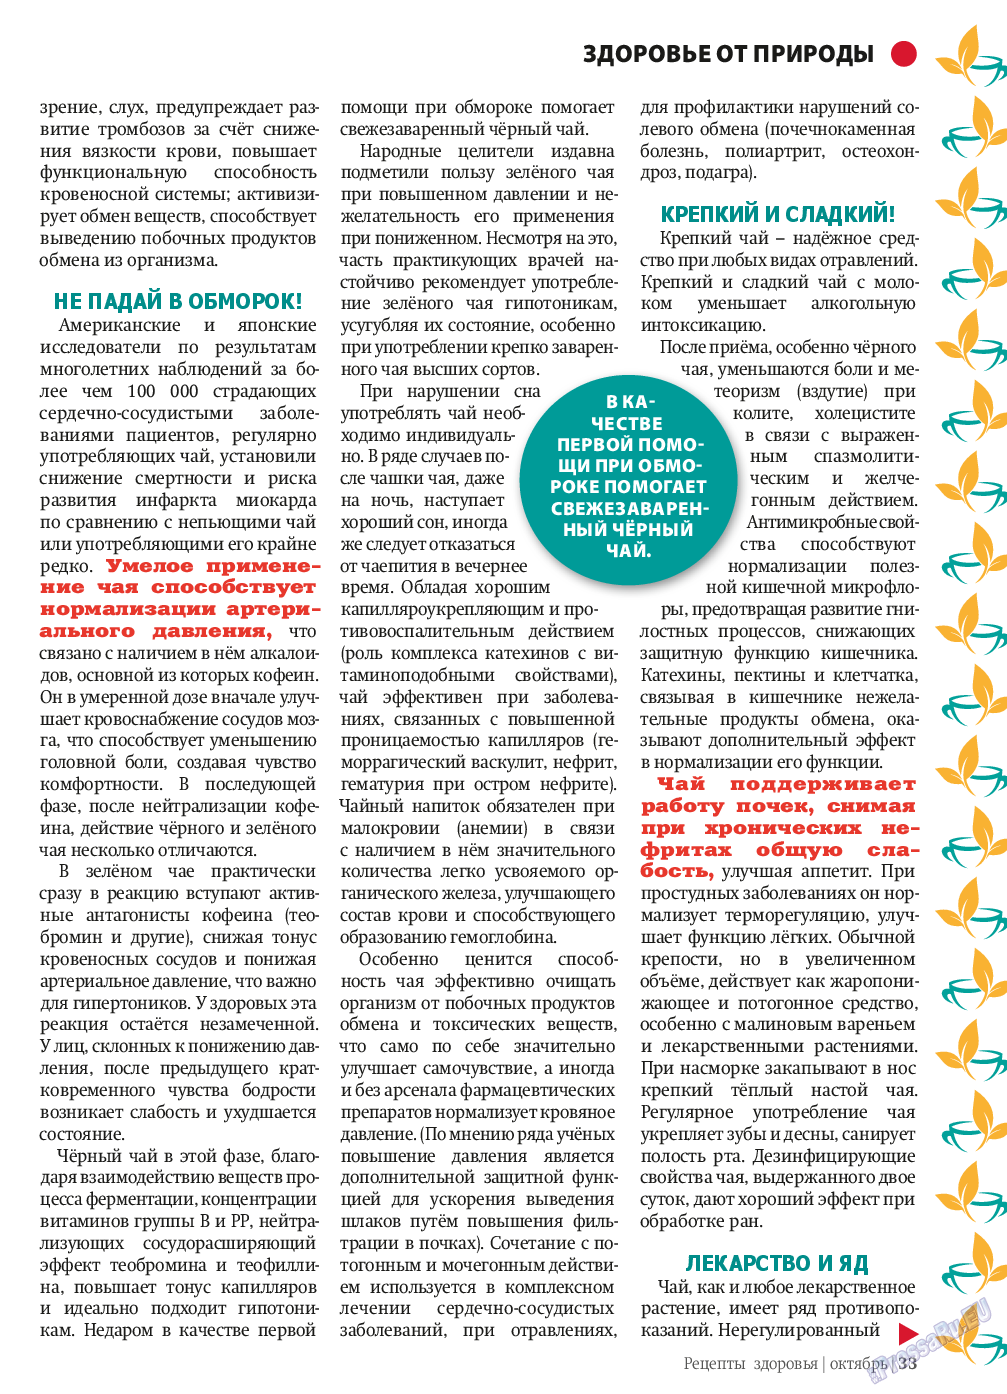 Рецепты здоровья, журнал. 2013 №10 стр.33